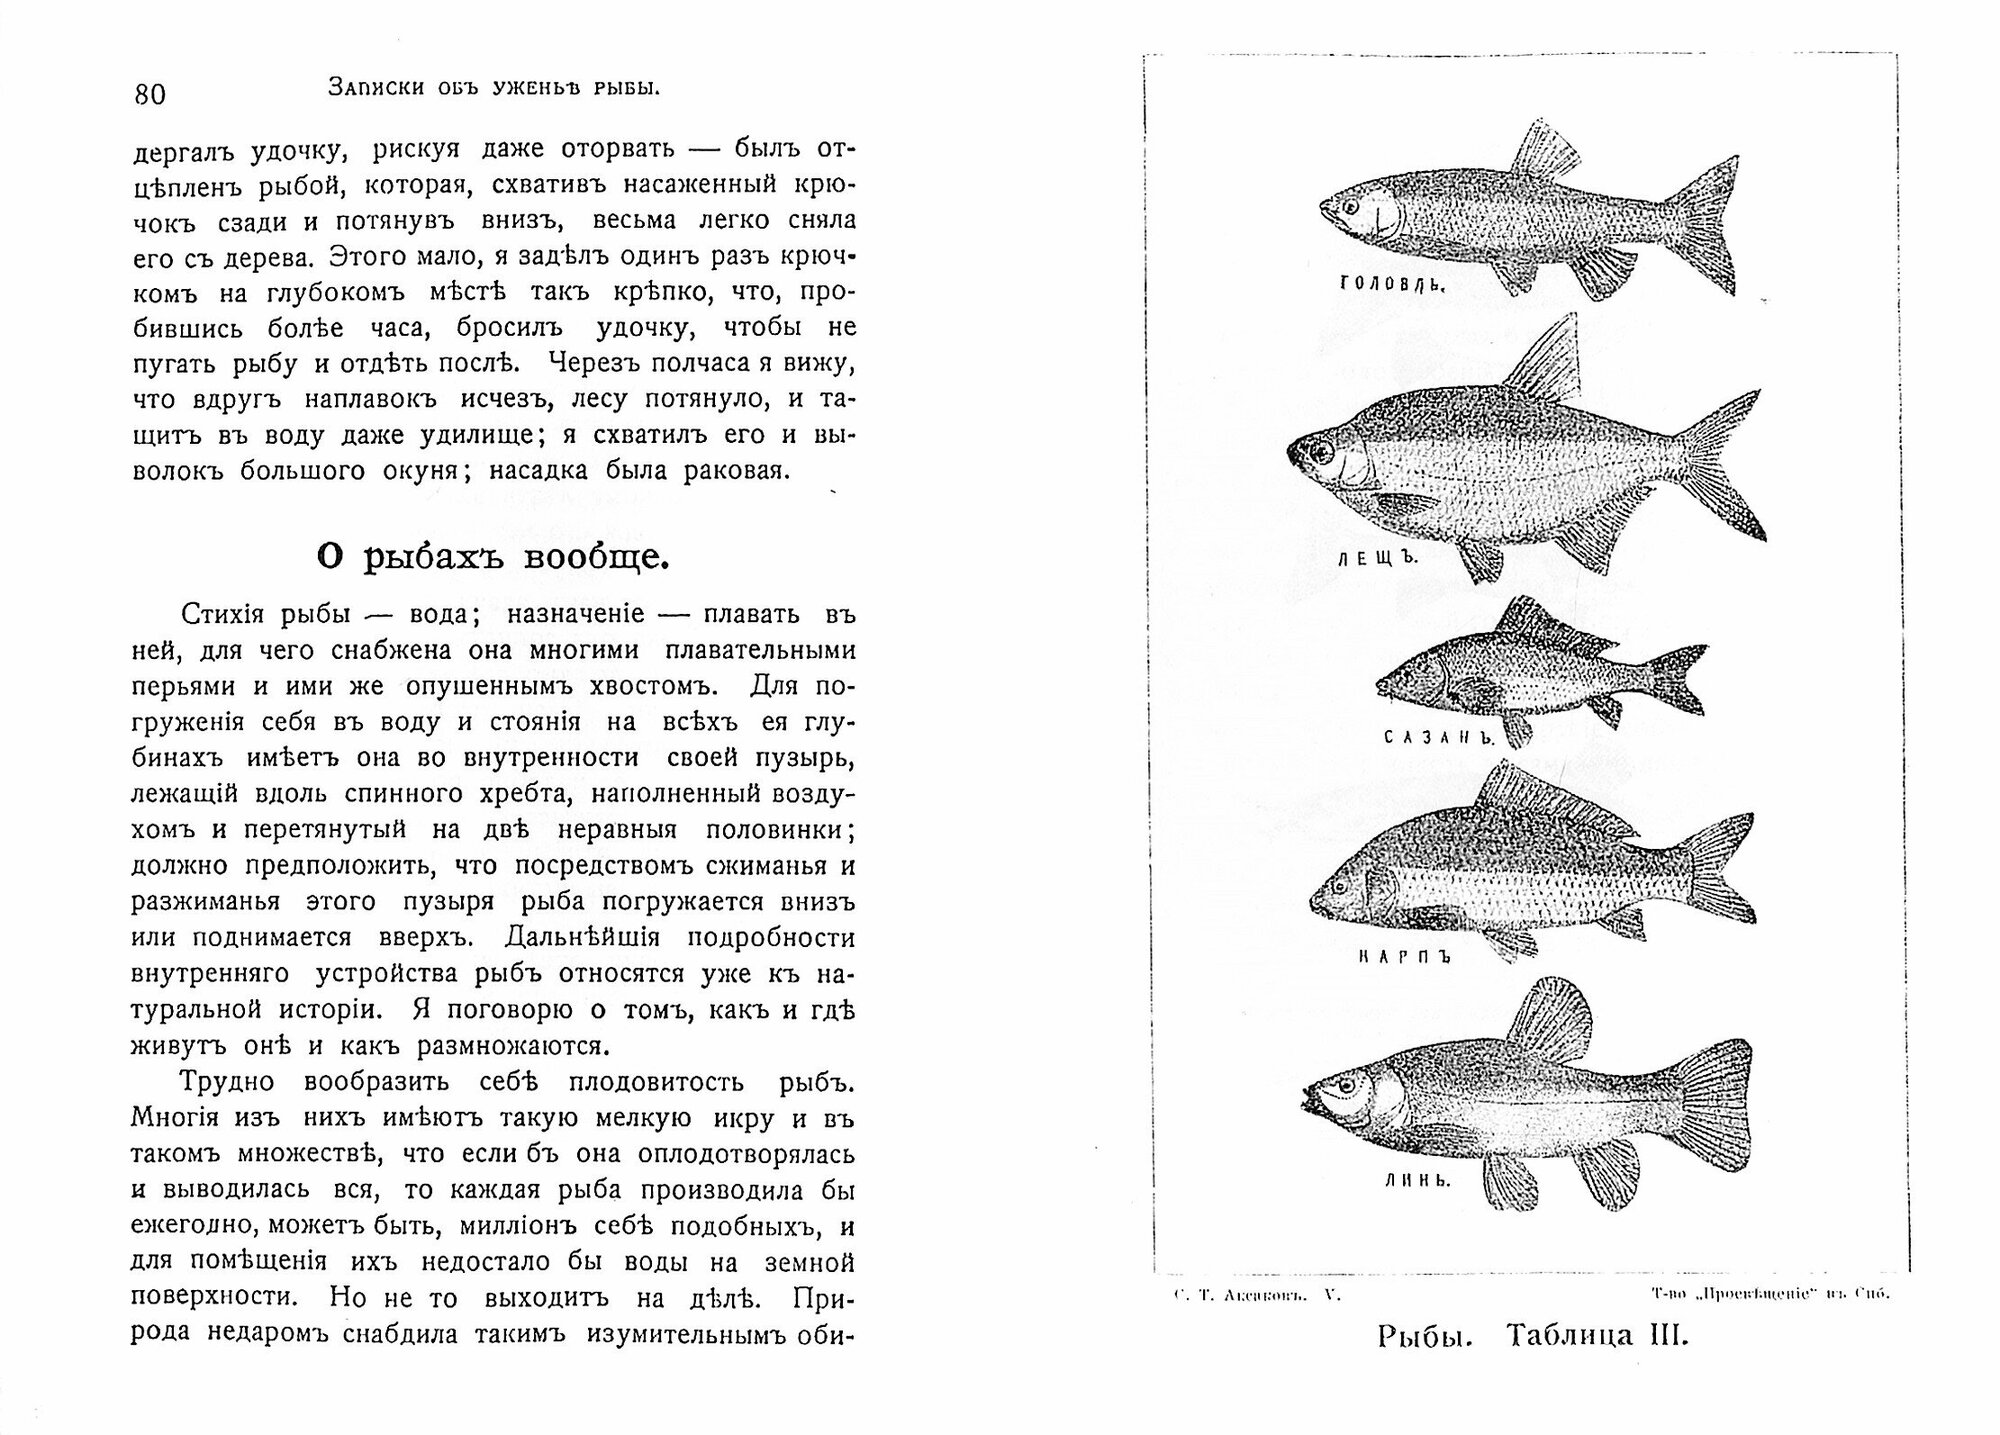 Записки о уженье рыбы (репринт) - фото №2